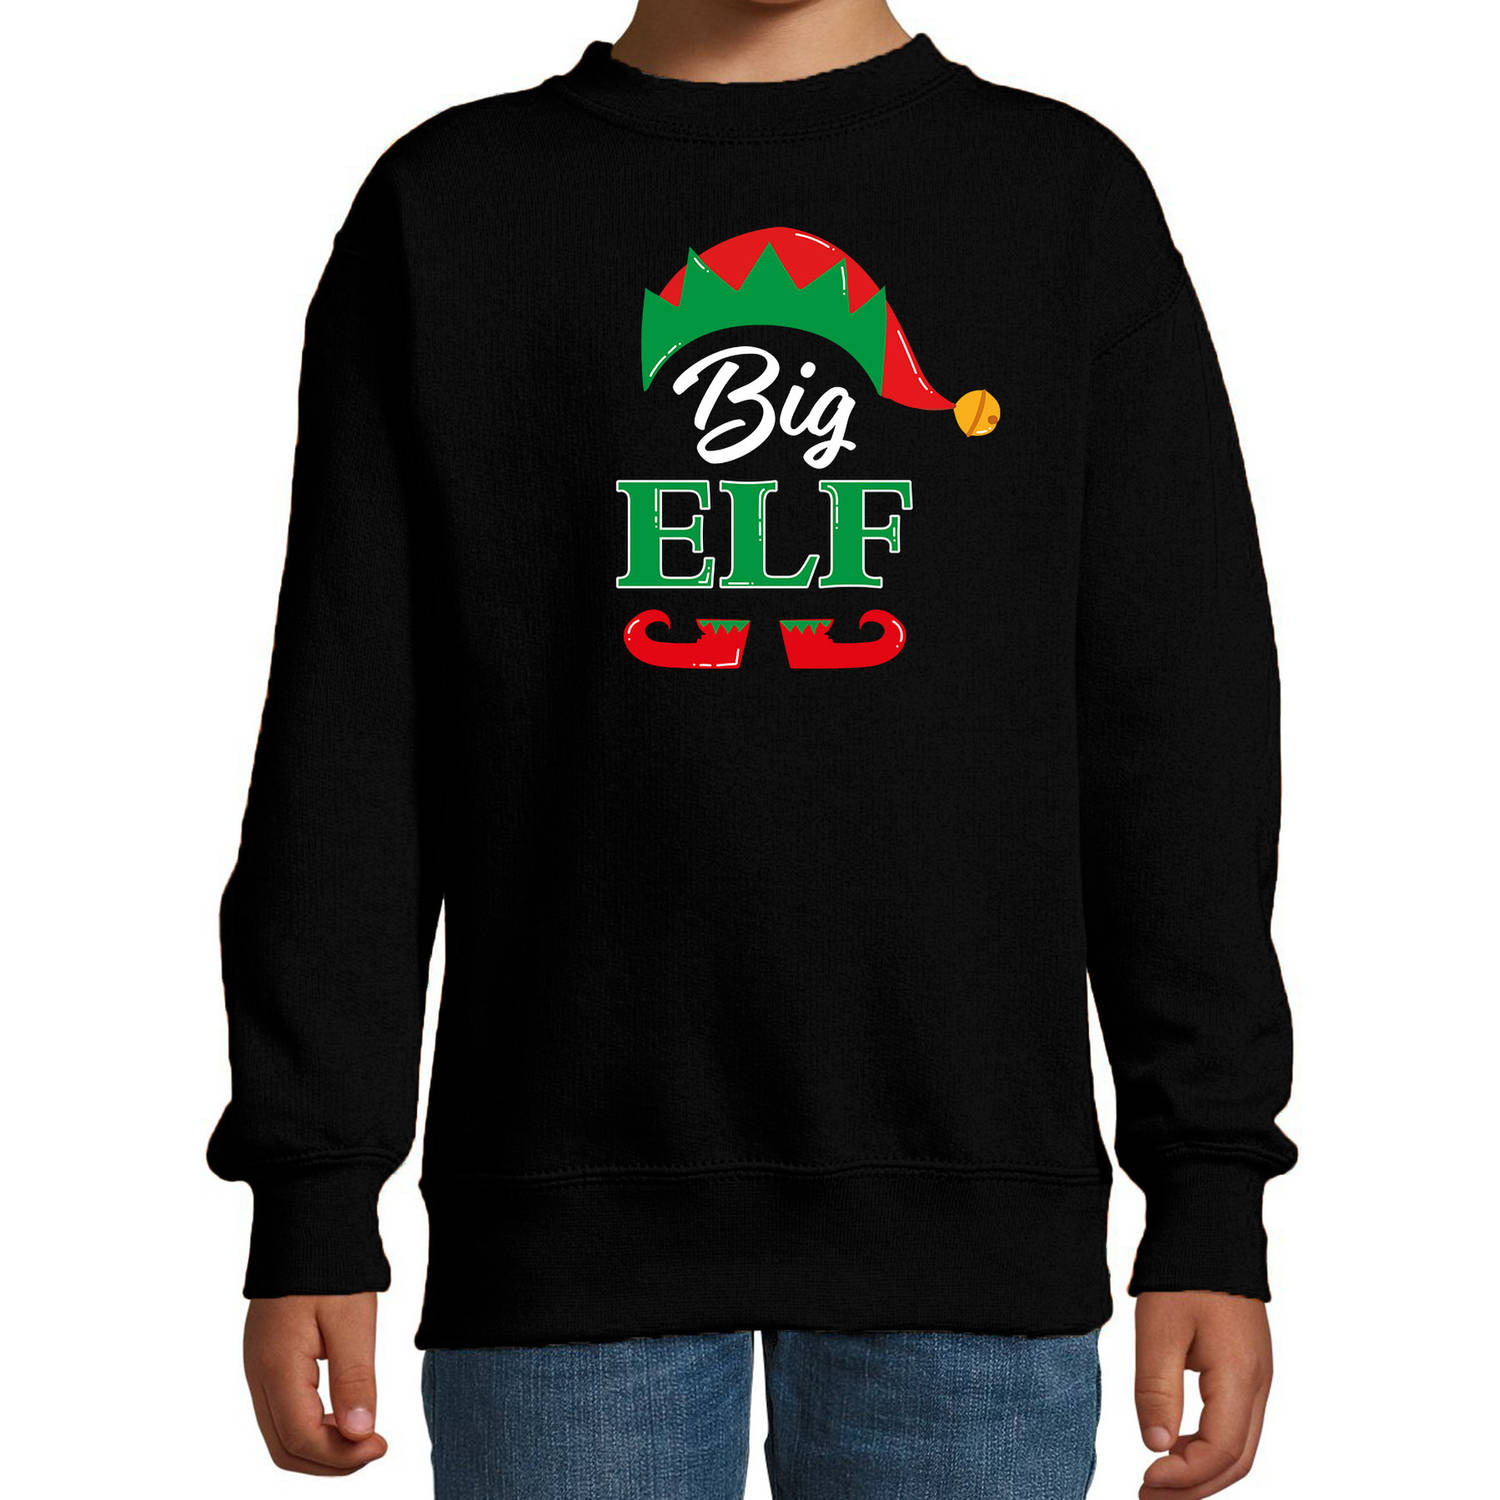 Big elf Kerstsweater / Kersttrui zwart voor kinderen 9-11 jaar (134/146) - kerst truien kind